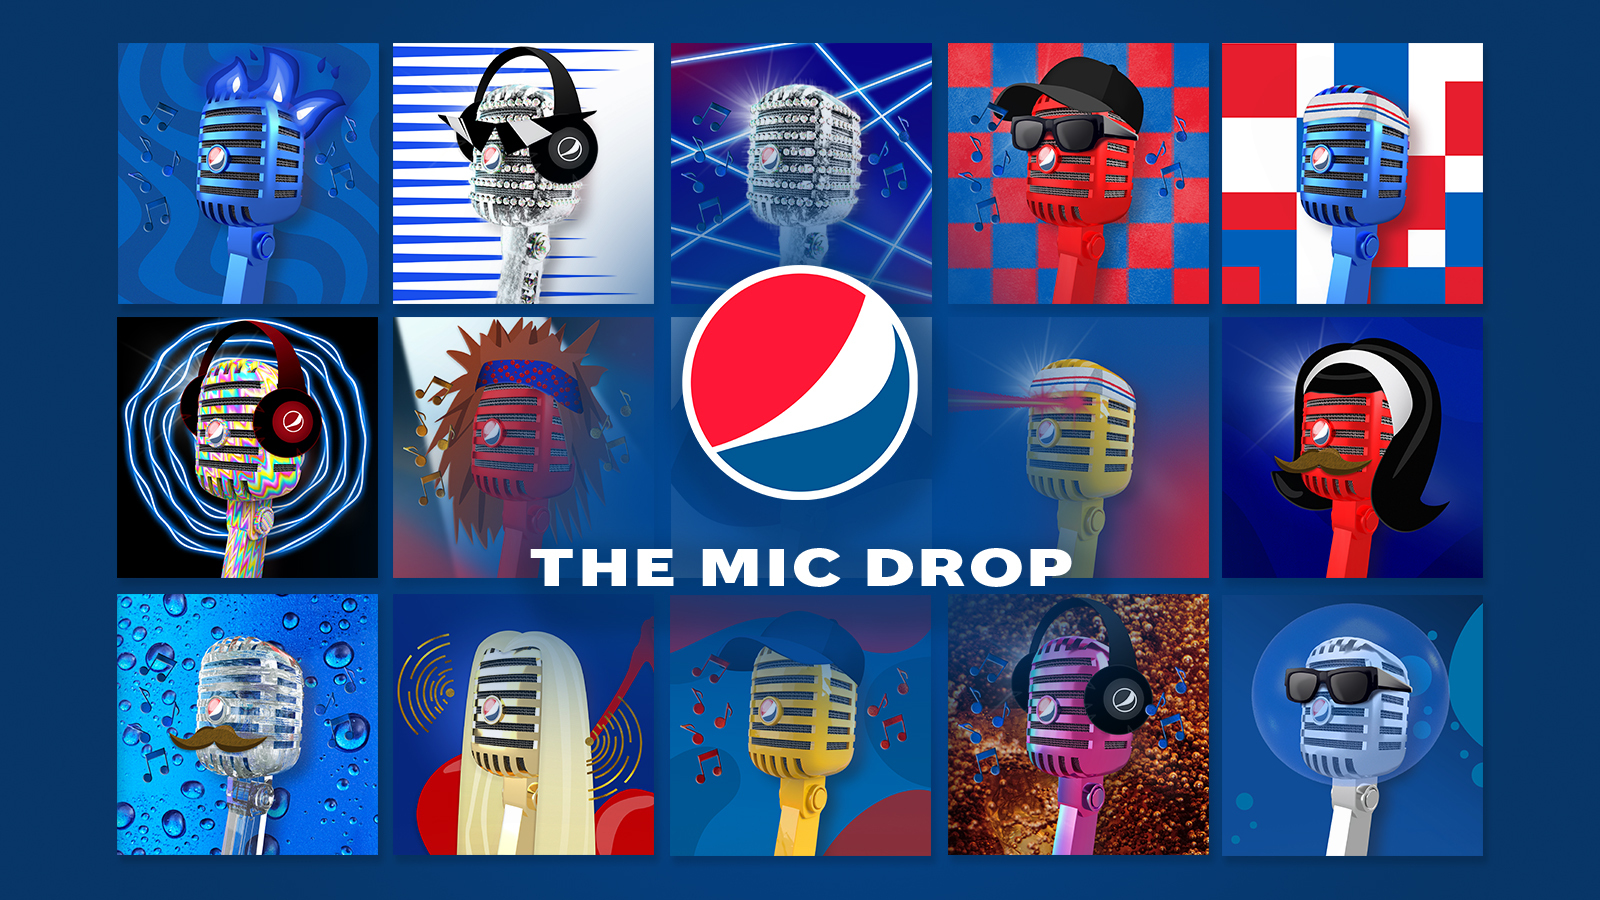 Pepsi gia nhập cuộc chơi NFT với bộ sưu tập “Mic Drop”, gợi mở khả năng tiến sâu vào metaverse